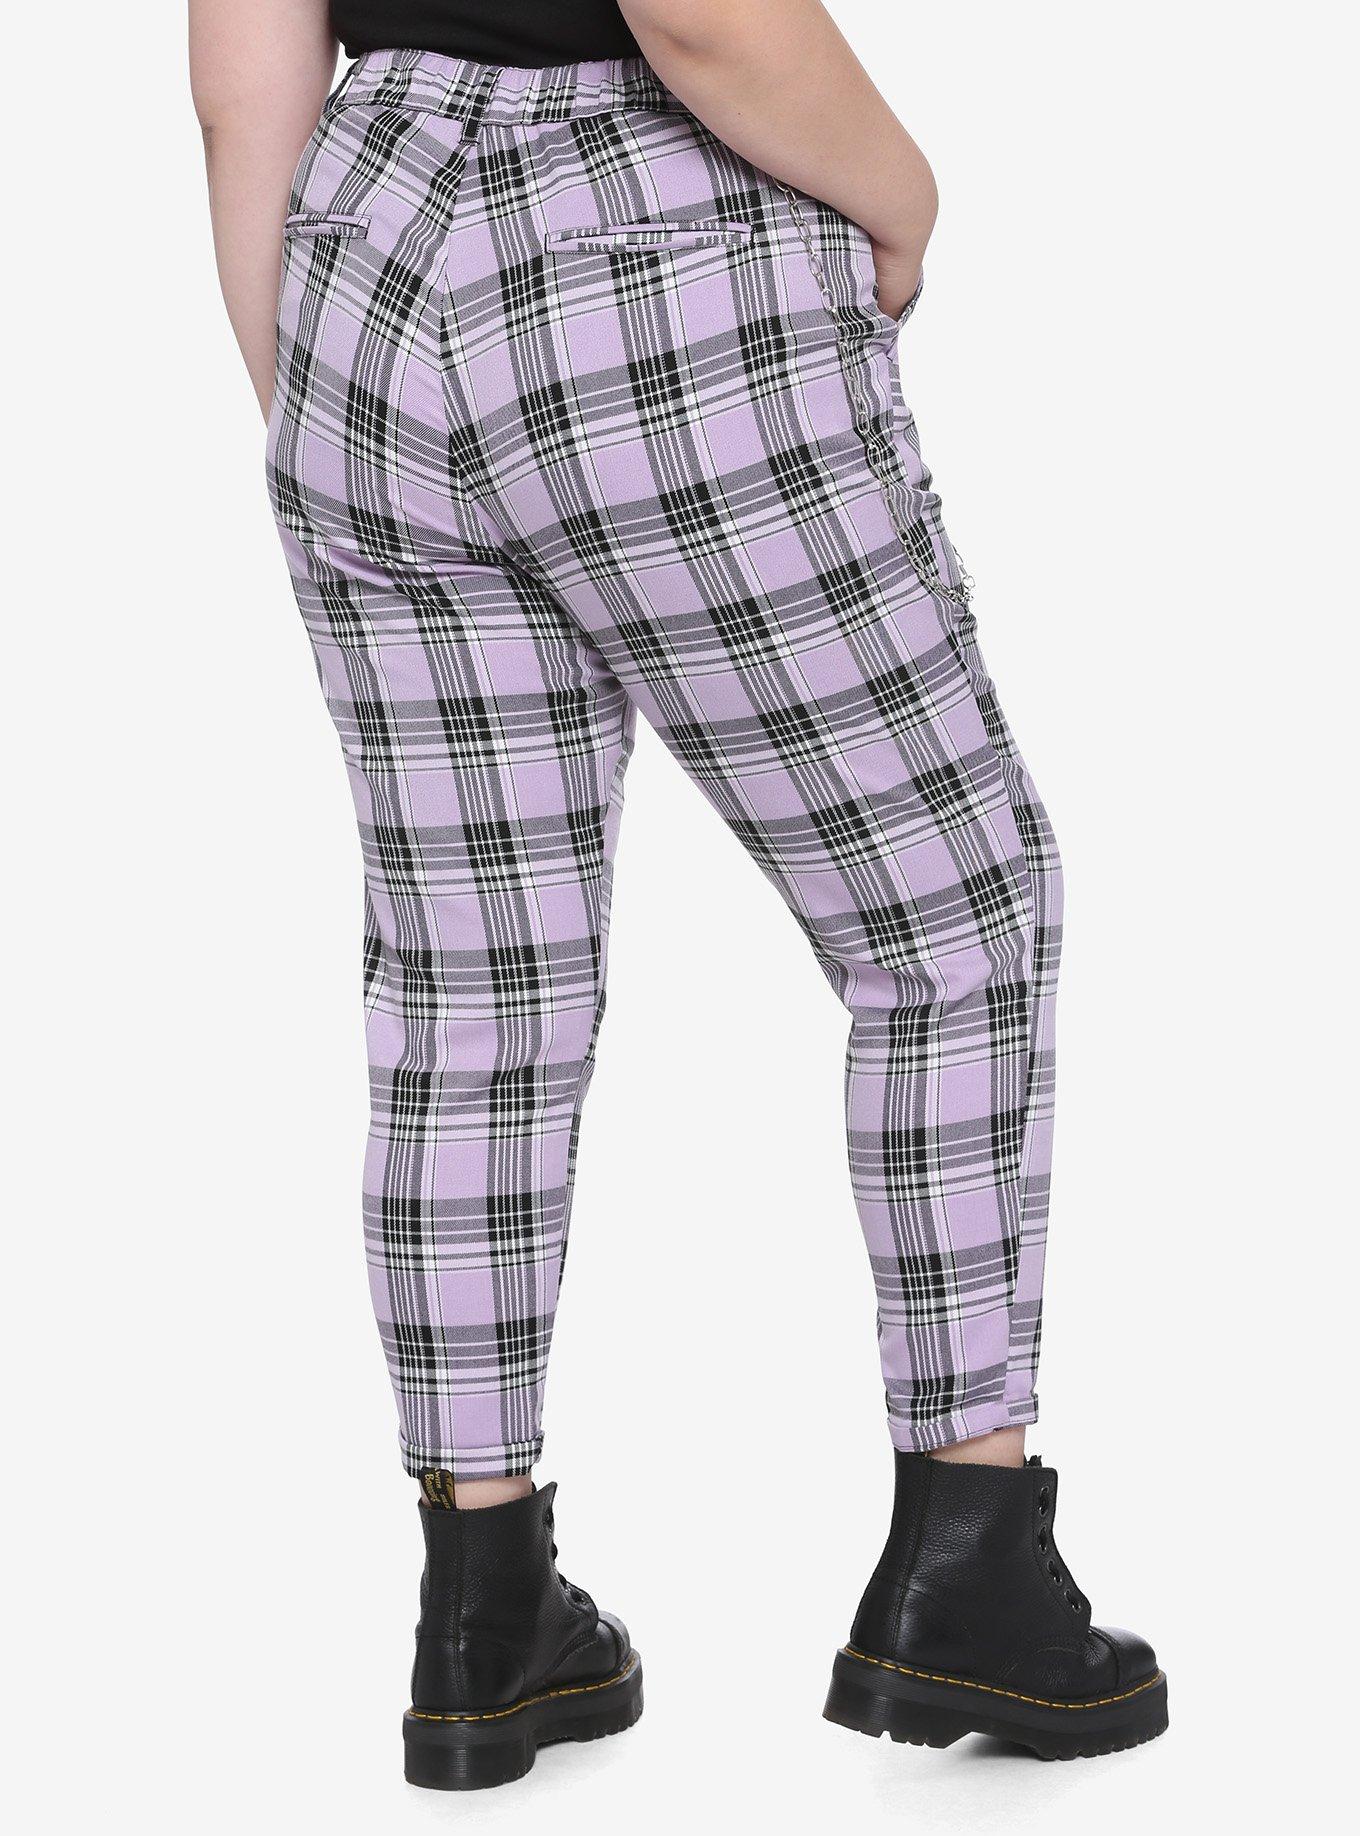 Purple Plaid Pants With Detachable Chain Plus Size, PLAID - PURPLE, alternate